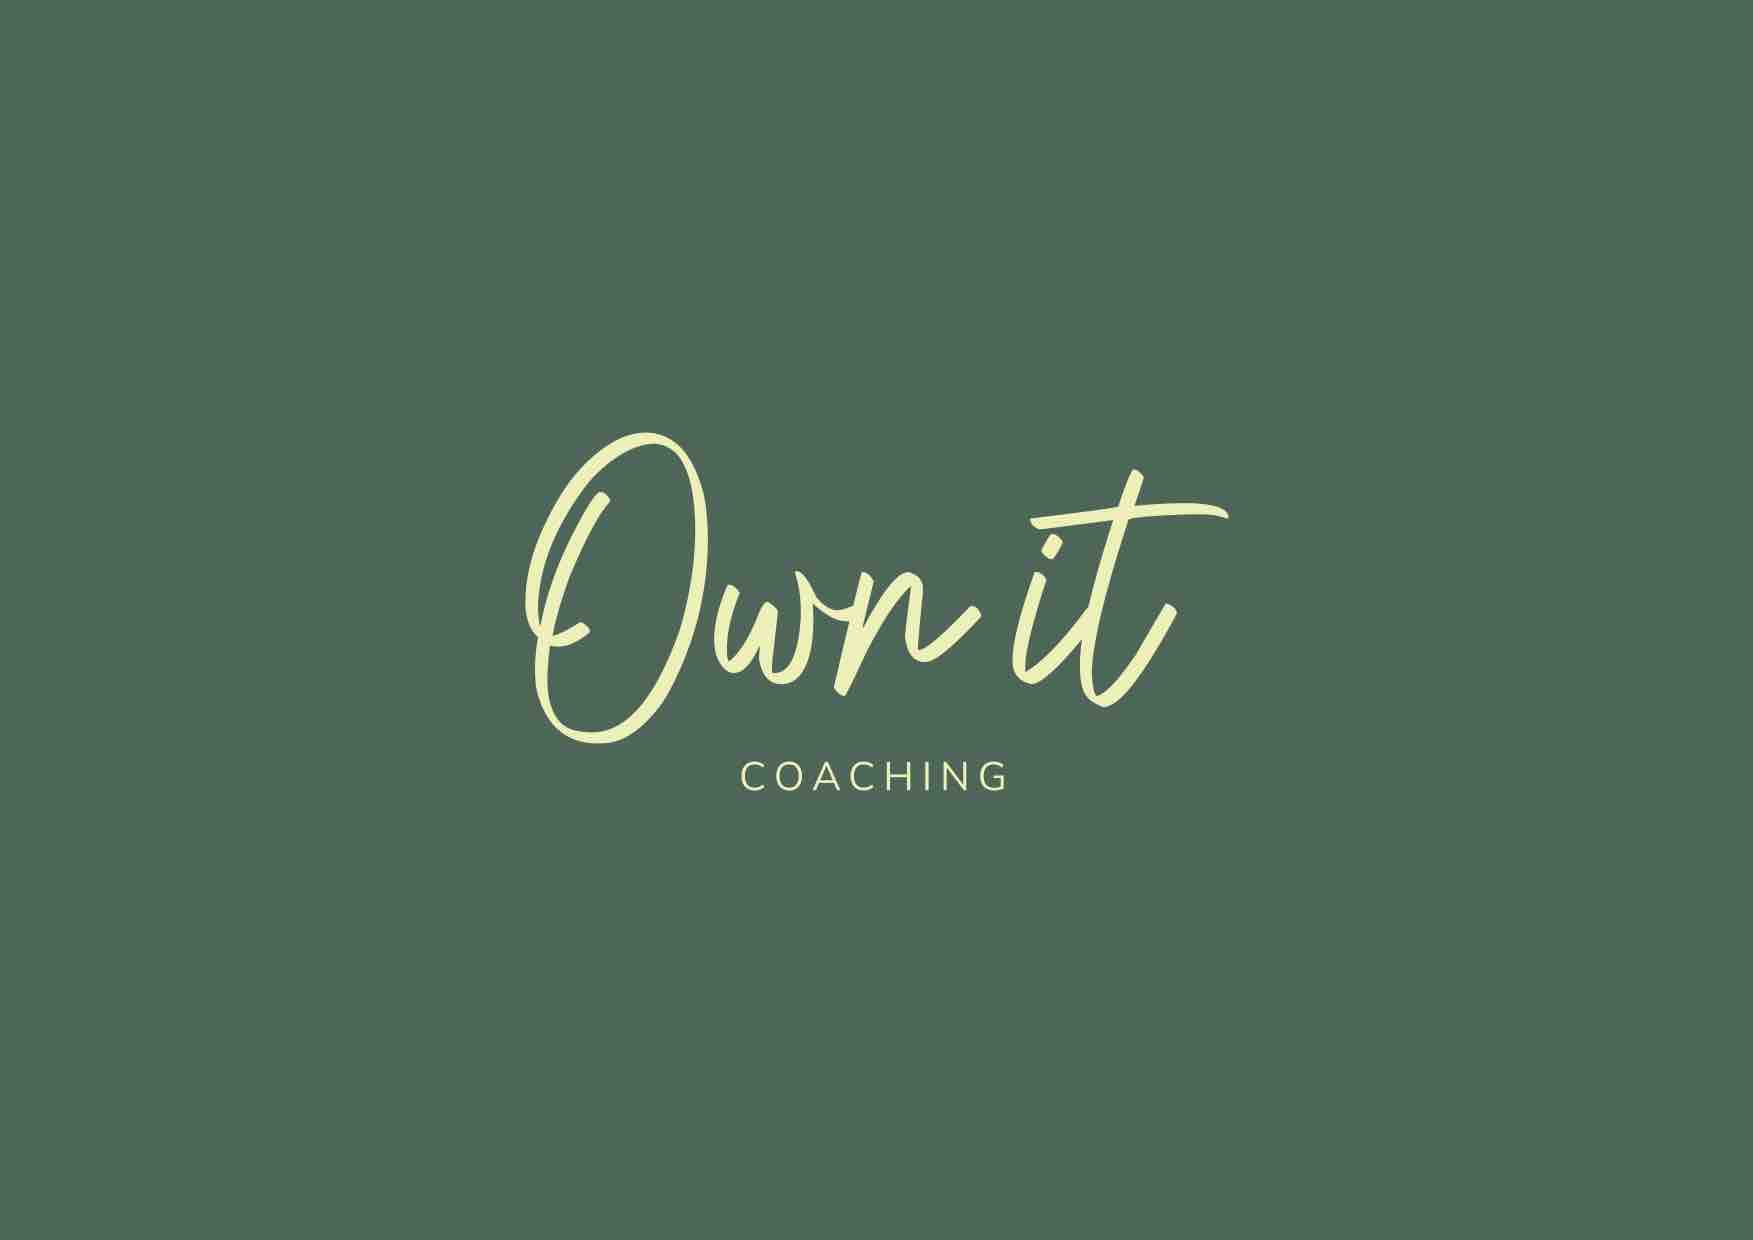 Life coaching - Own It Coaching